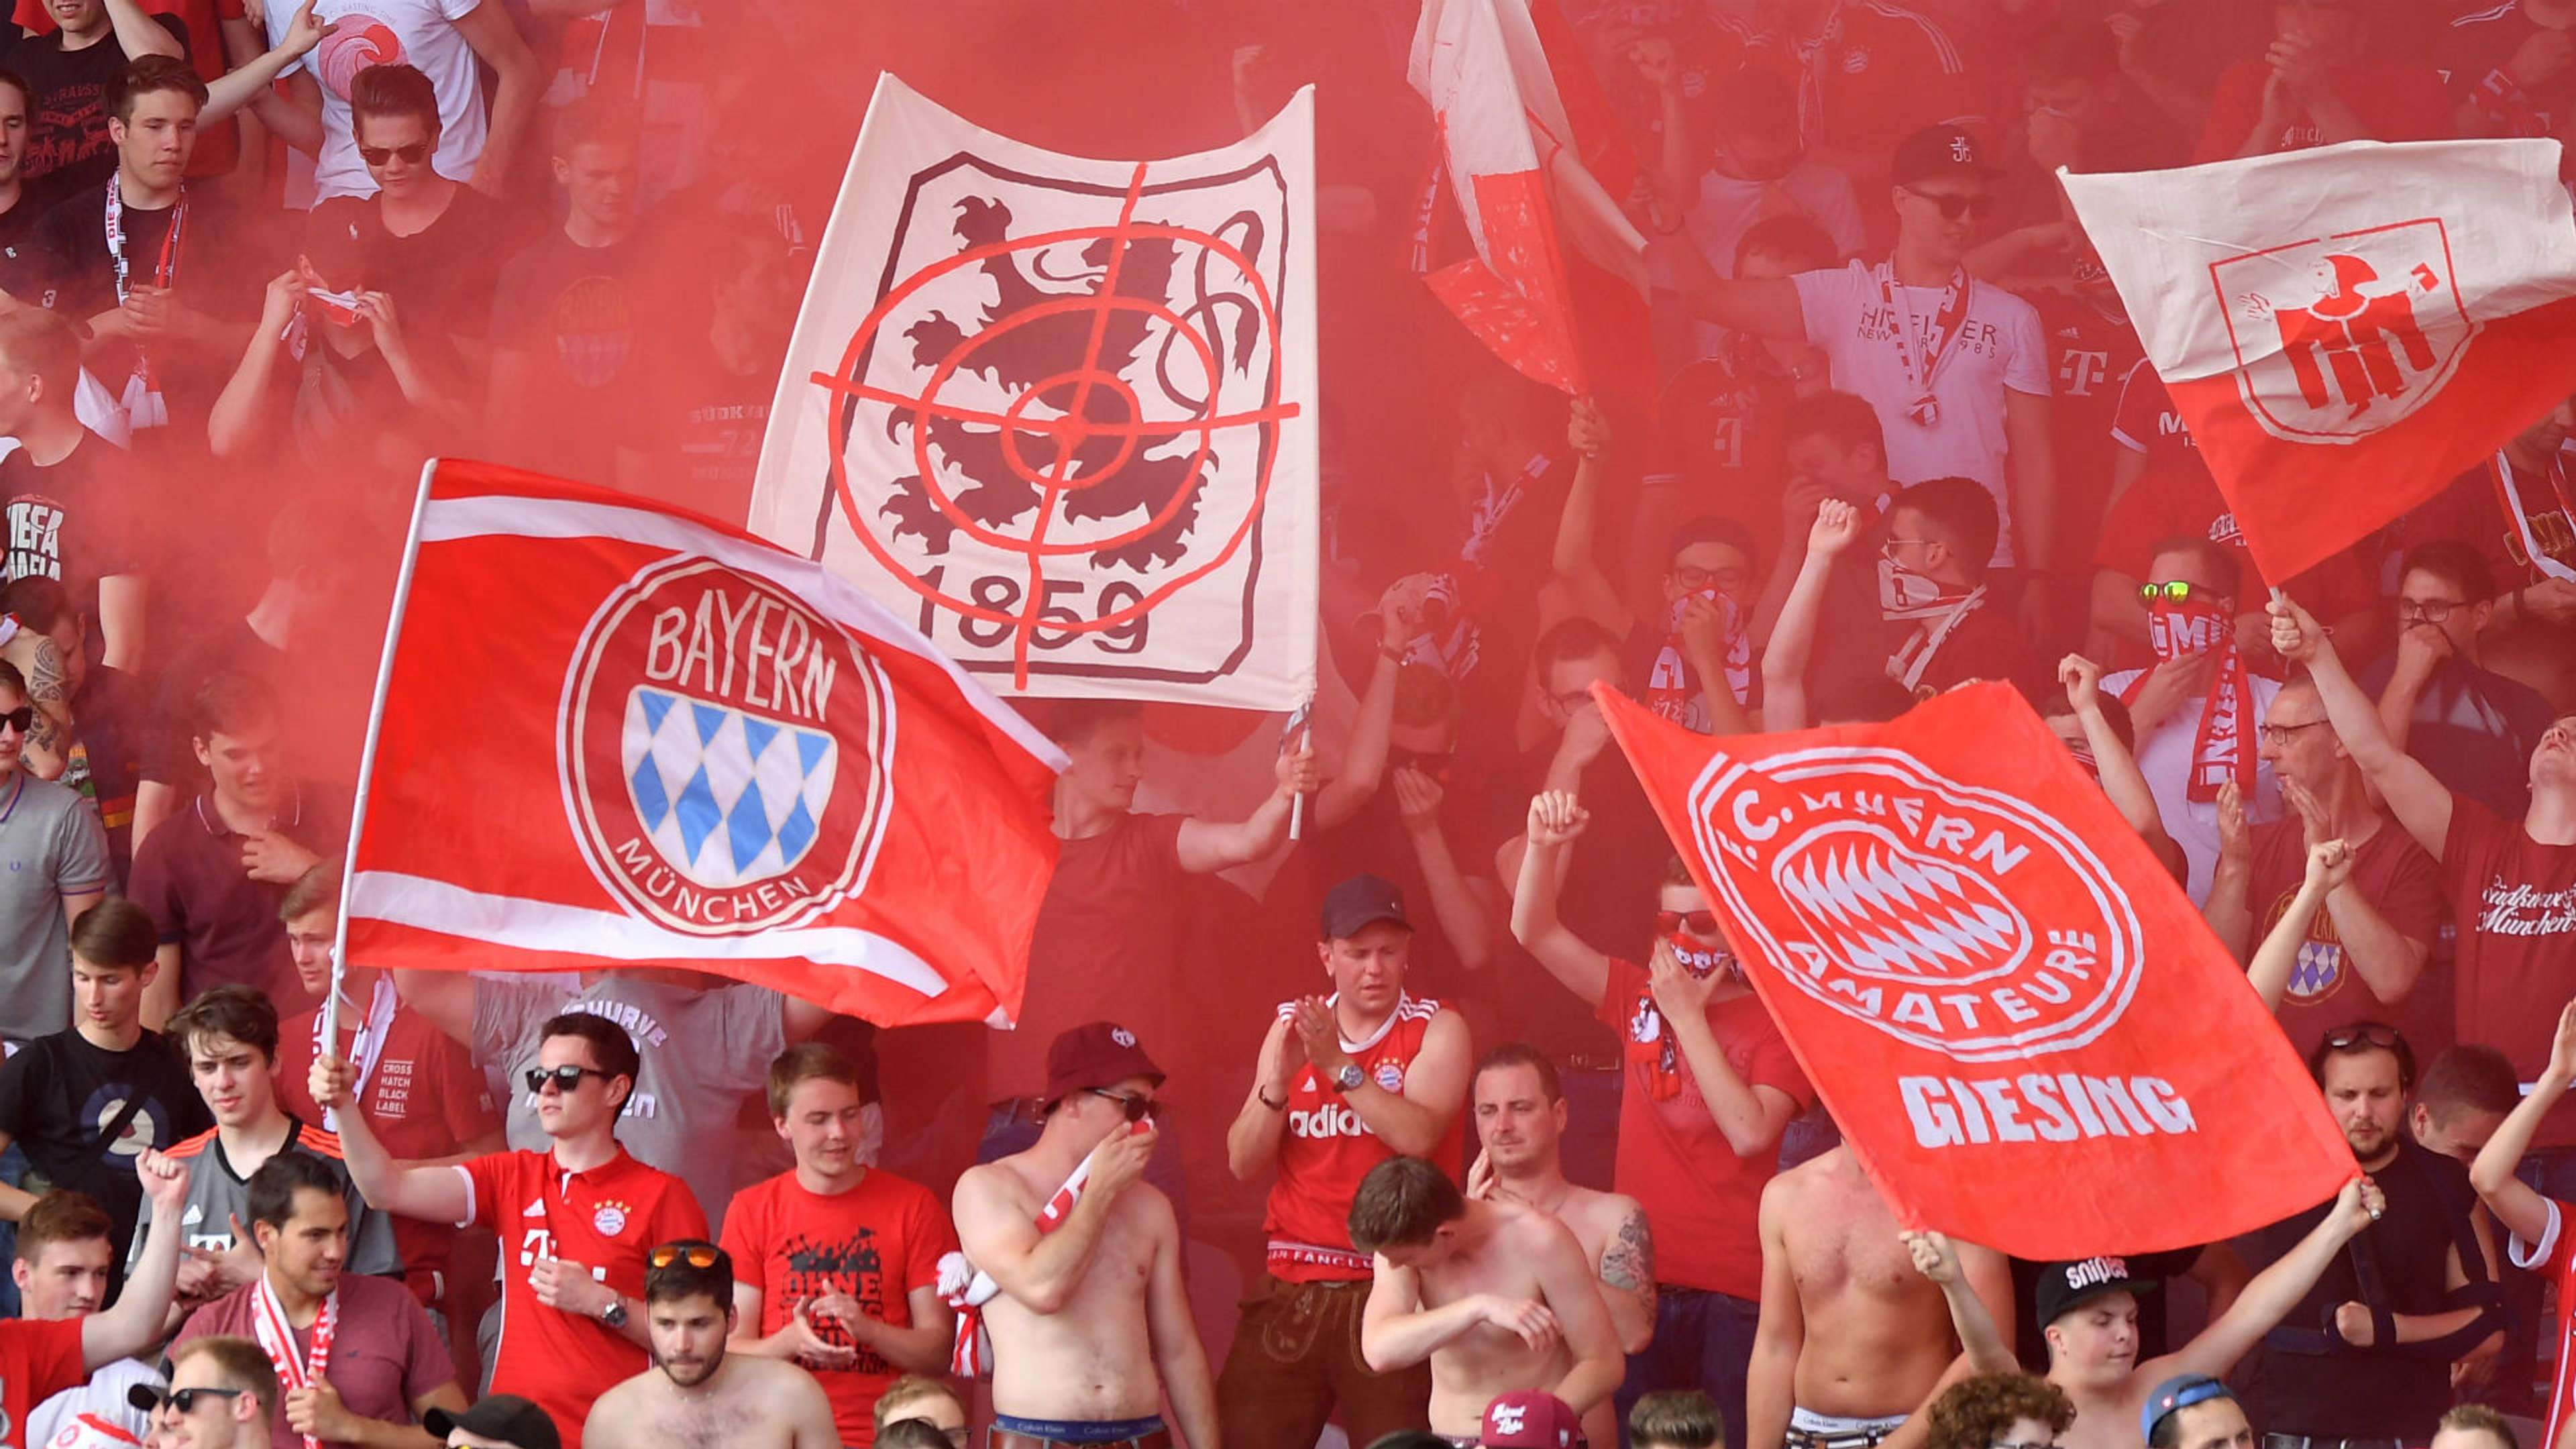 Bayern Munich 1860 Munich fans